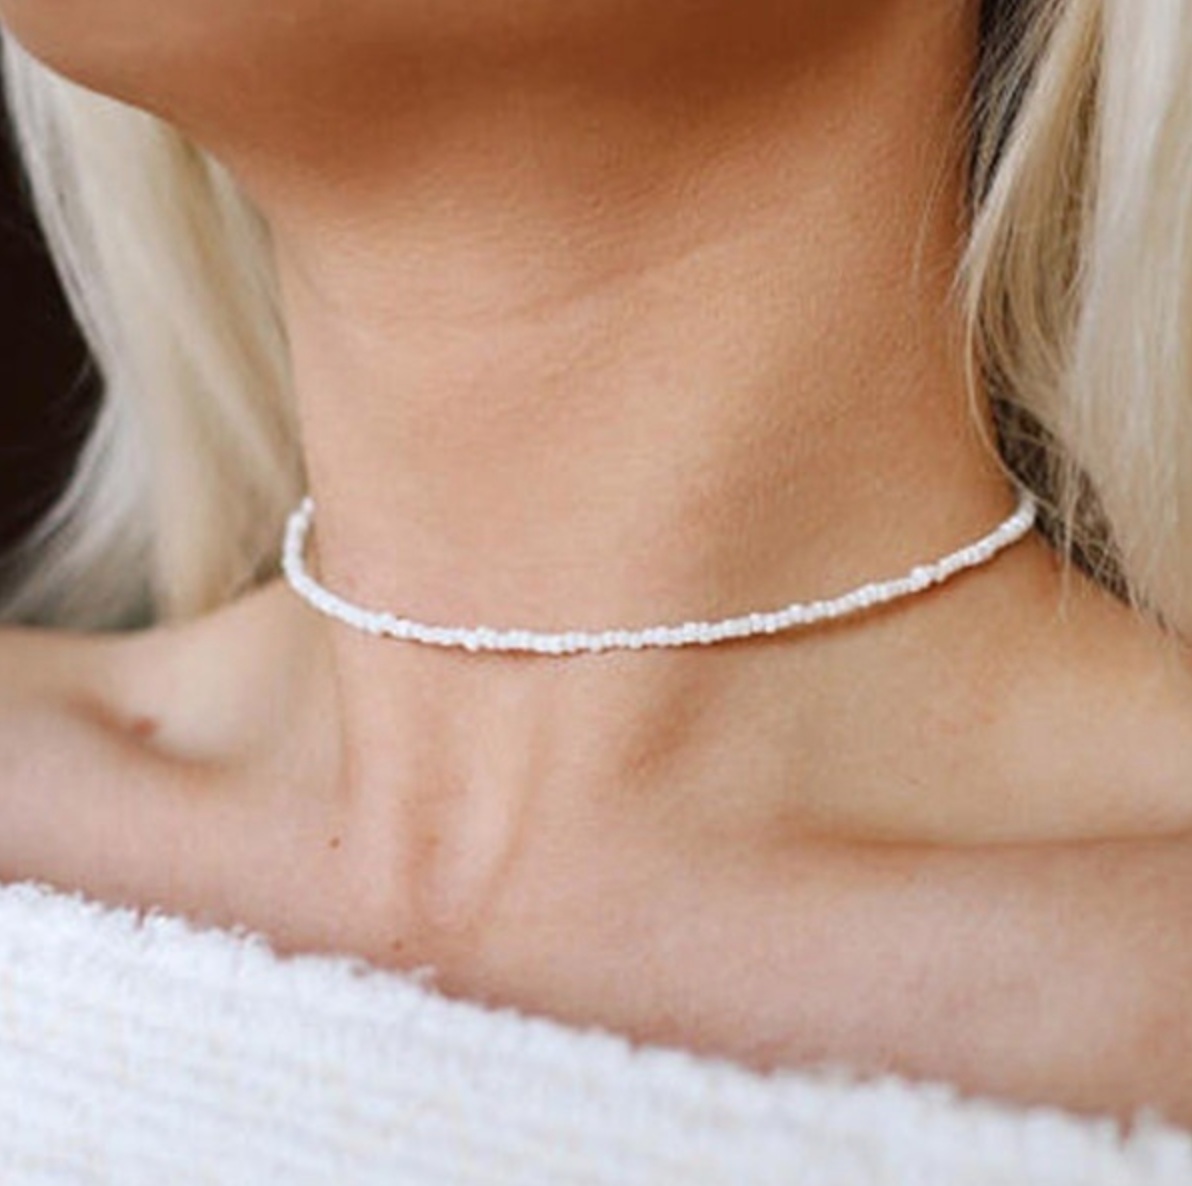 Xiaomi Pearl Choker Necklace Women